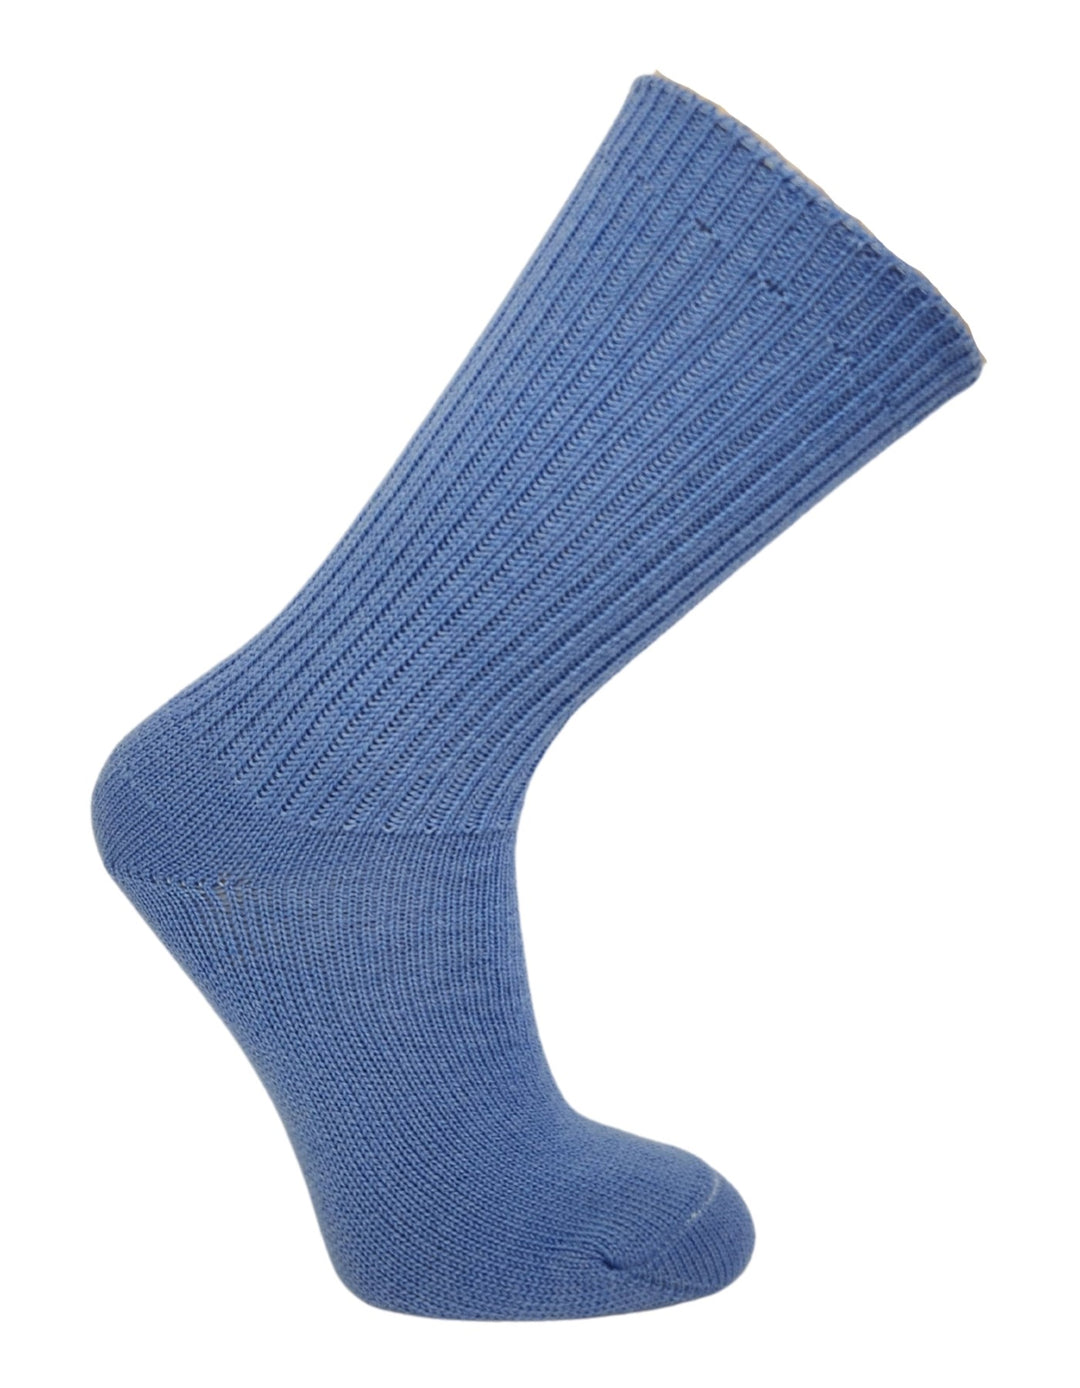 J.B. Field's Casual Wool Weekender 96% Merino Wool Sock